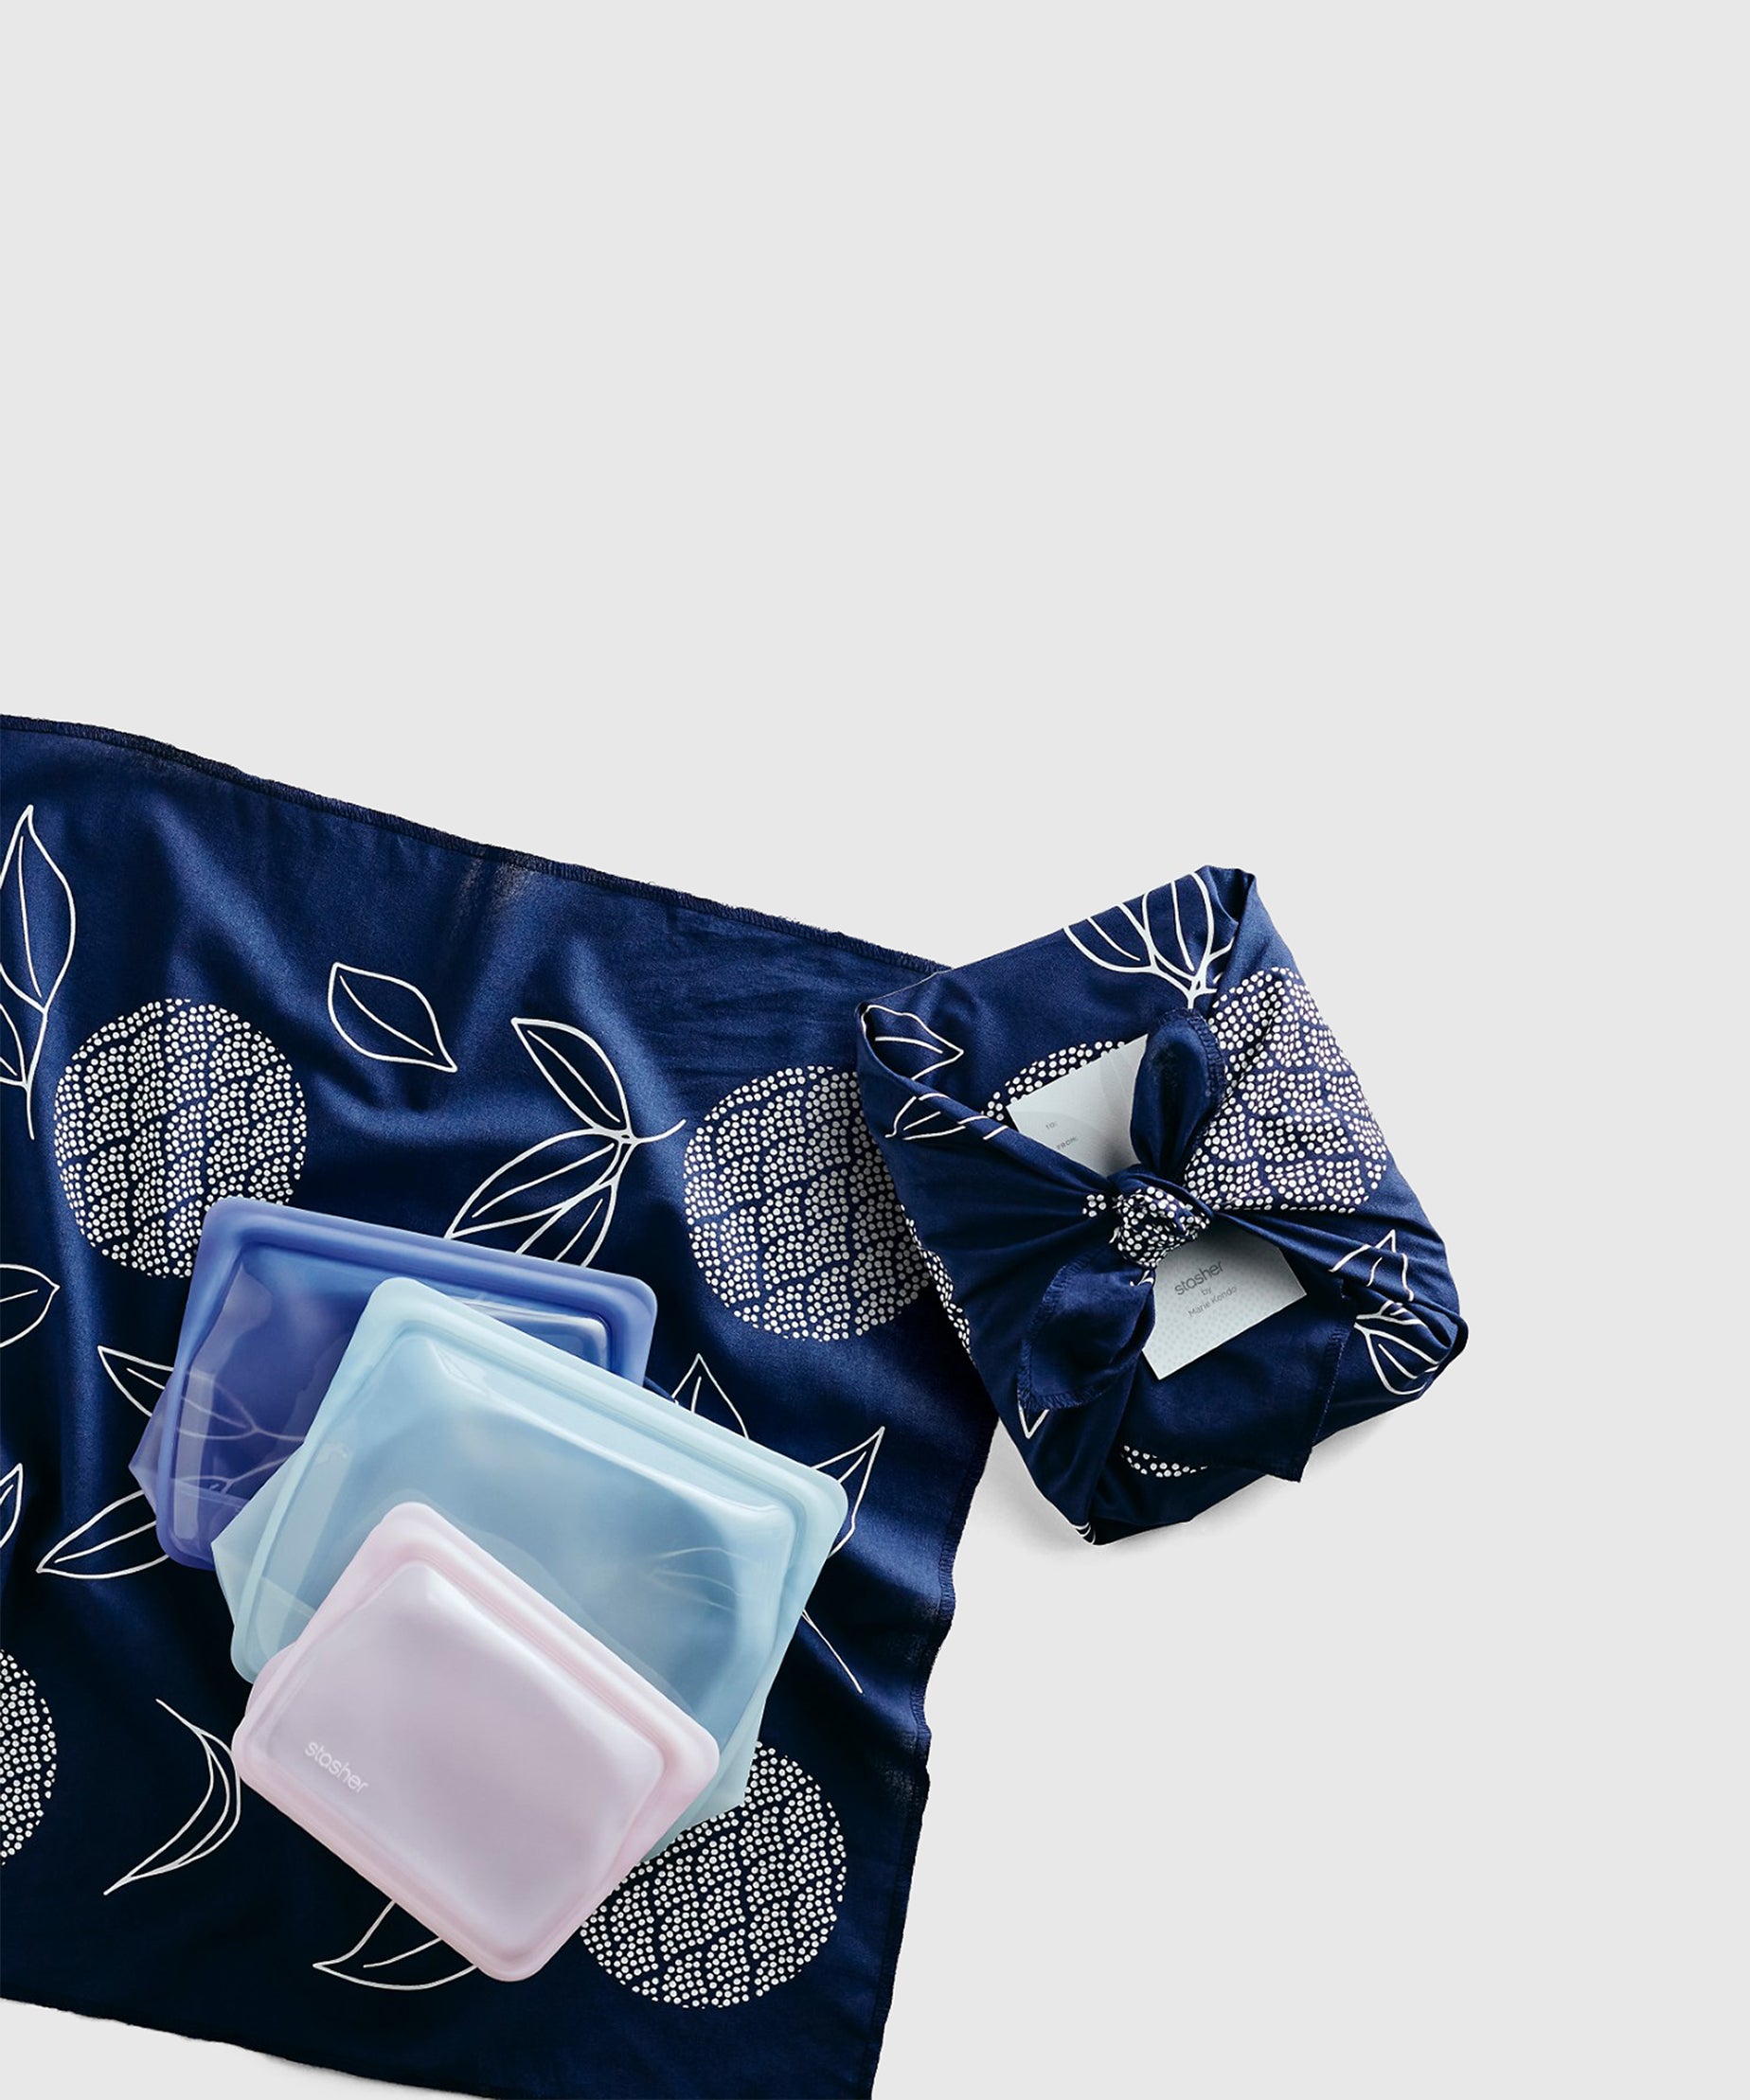 KonMari x Stasher Sustainable Gift Set | Kitchen Storage | KonMari by Marie Kondo 